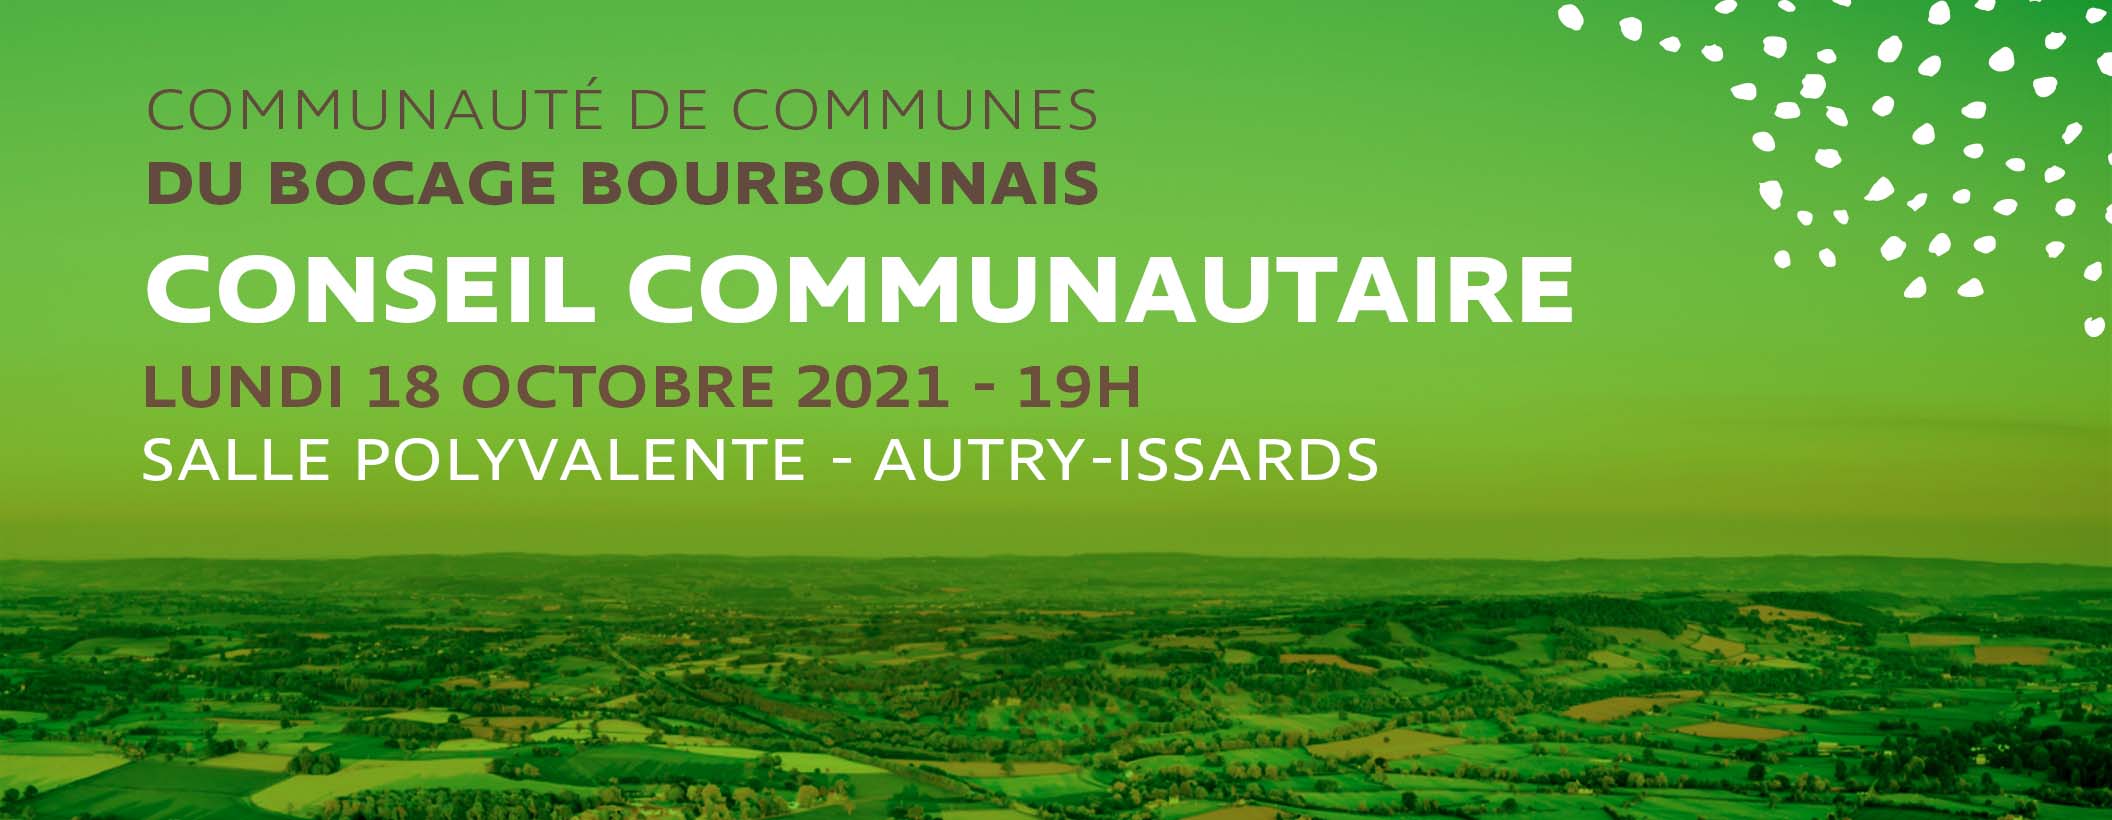 Prochain Conseil Communautaire : lundi 18 octobre à Autry-Issards